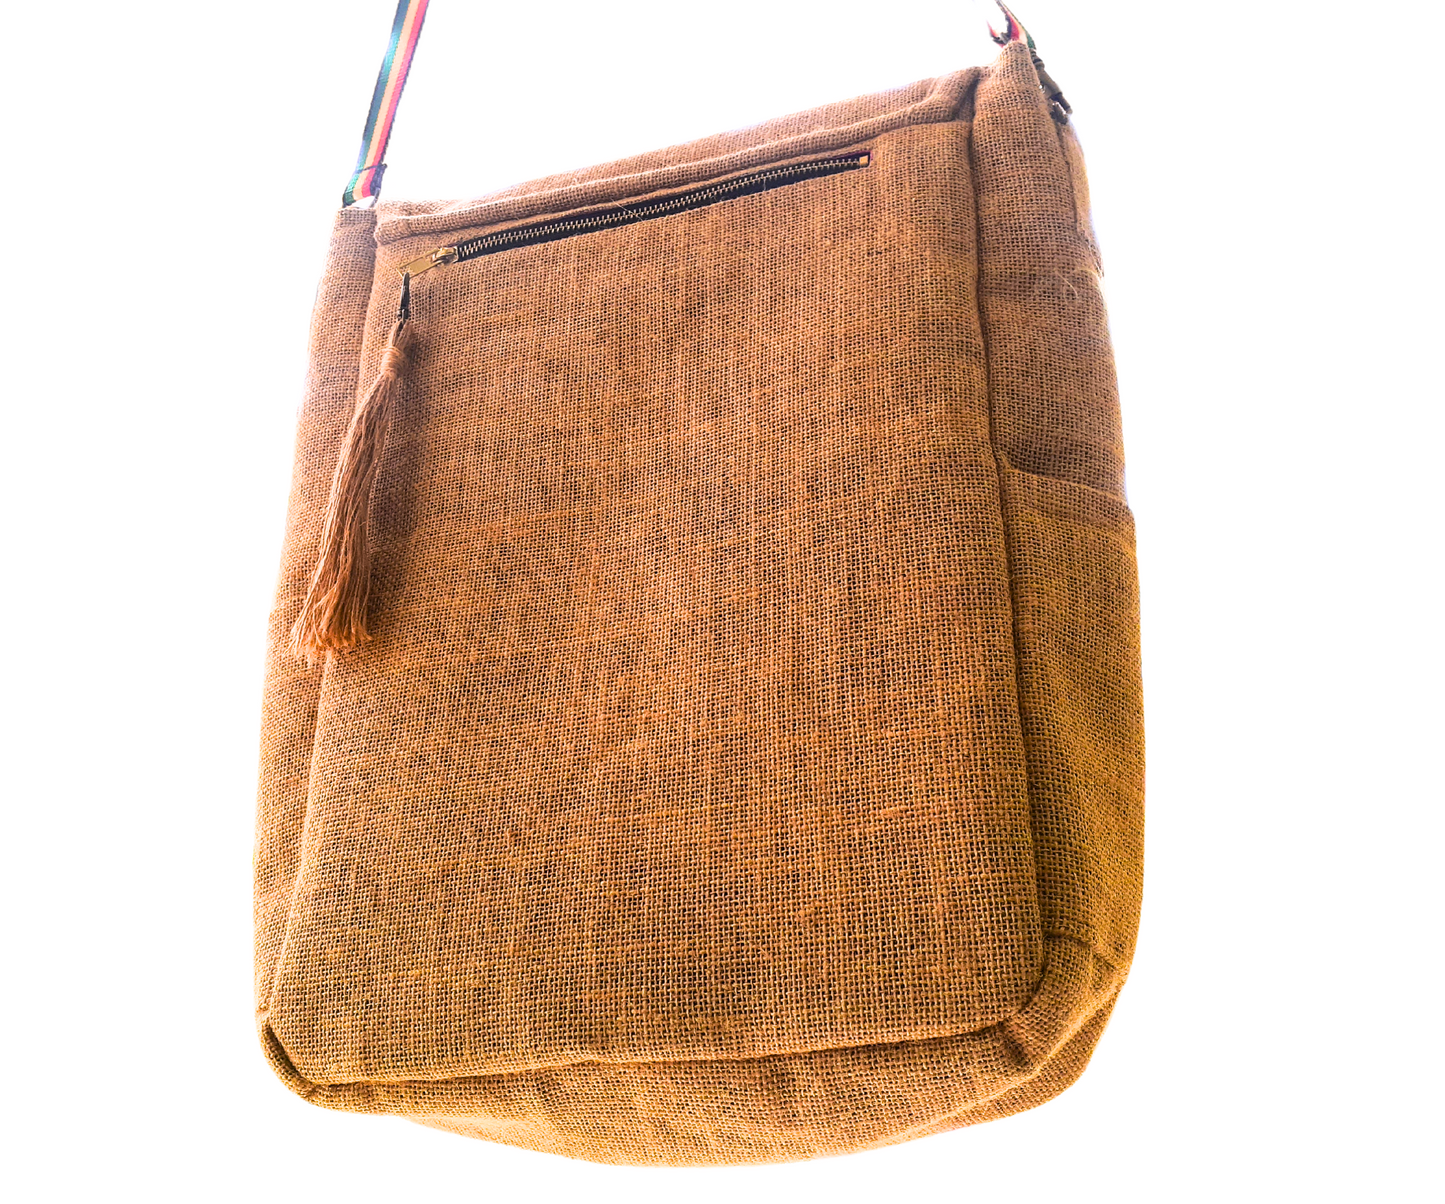 Rasta Inspired Handmade Jute/Burlap Messenger Bag